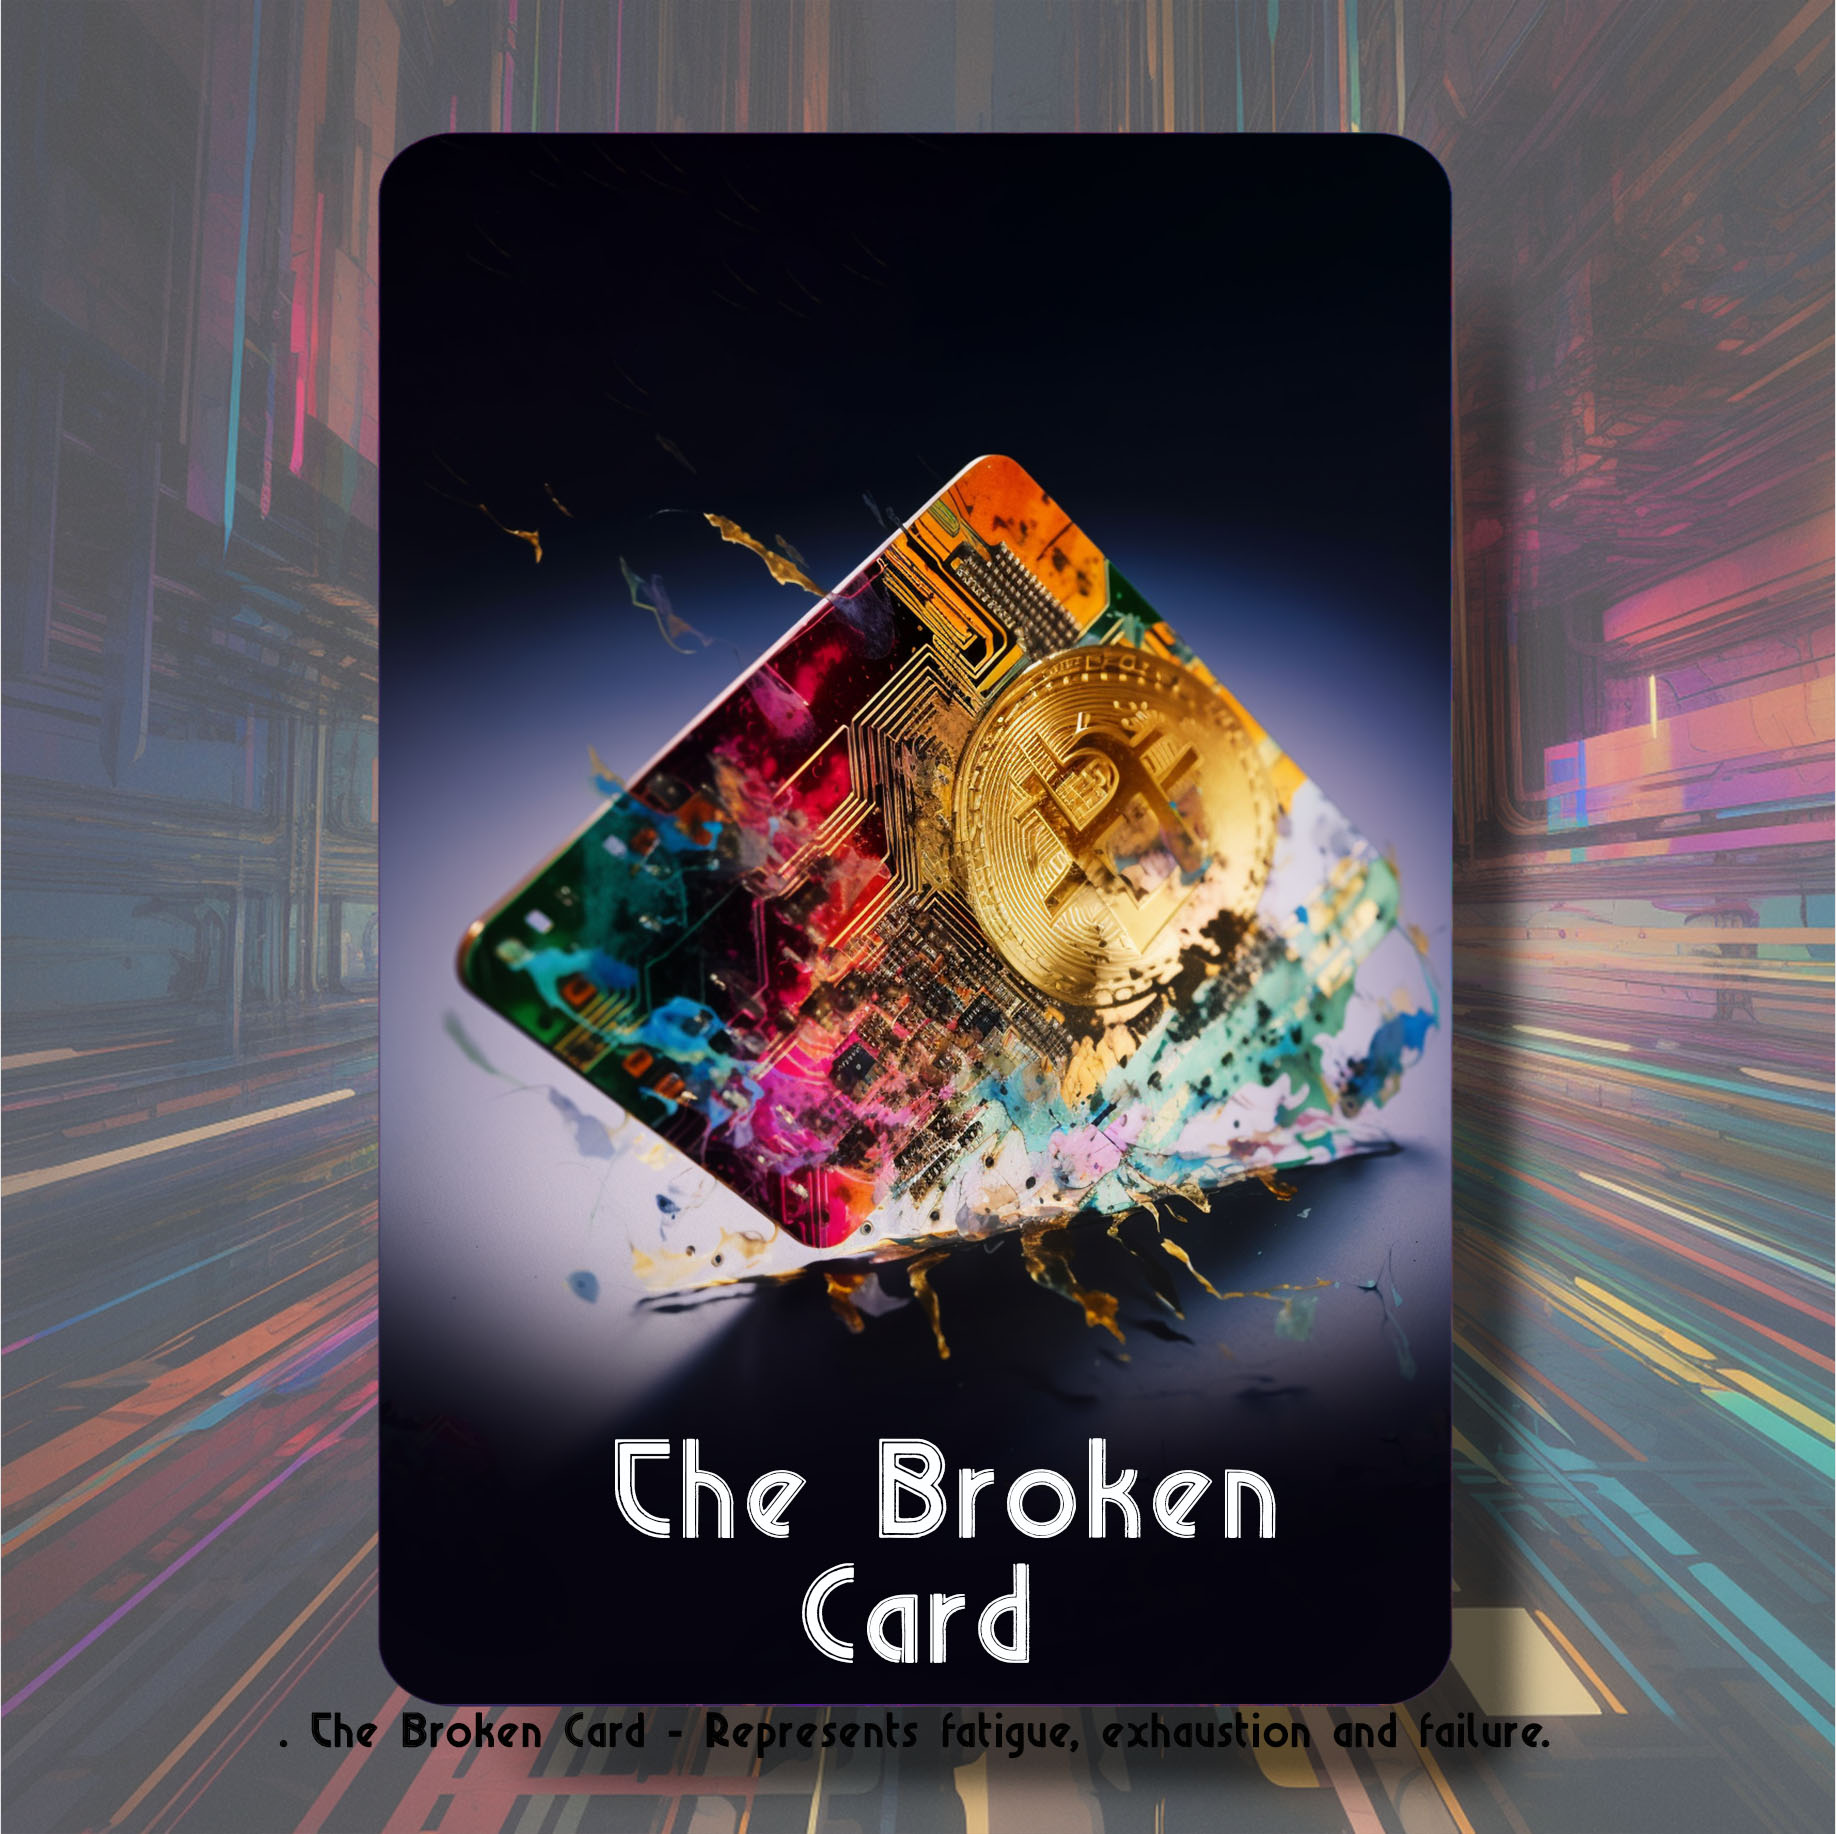 The Broken Card asset